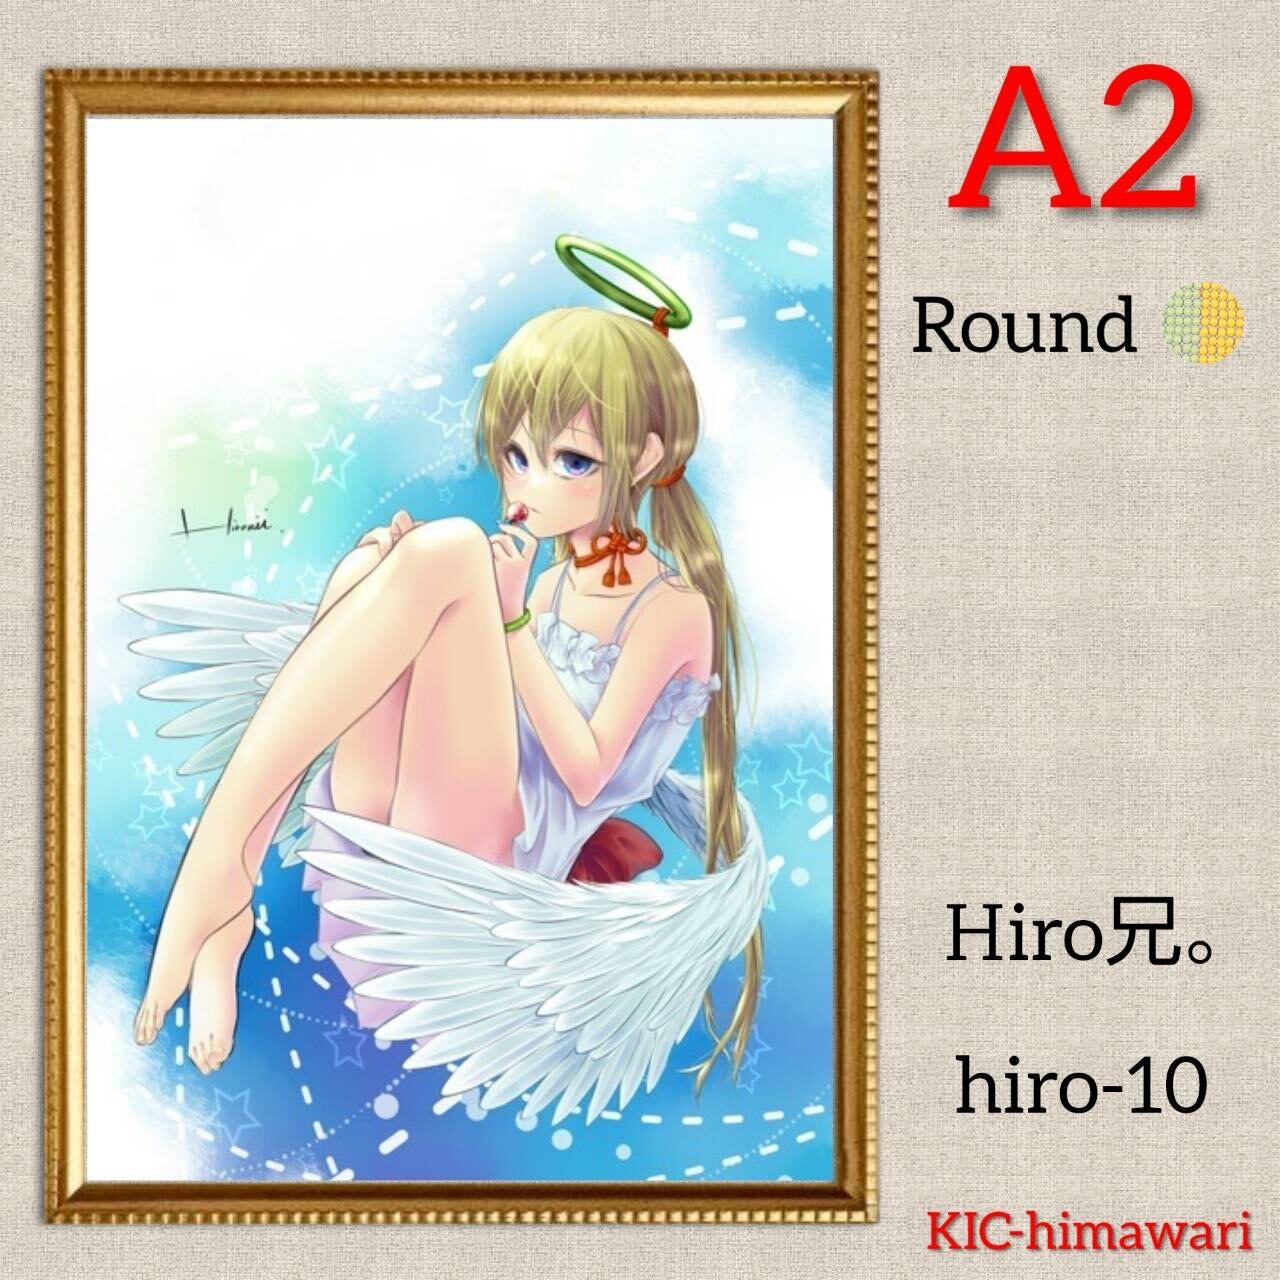 A2サイズ 丸型ビーズ【hir-10】Hiro兄。ダイヤモンドアート